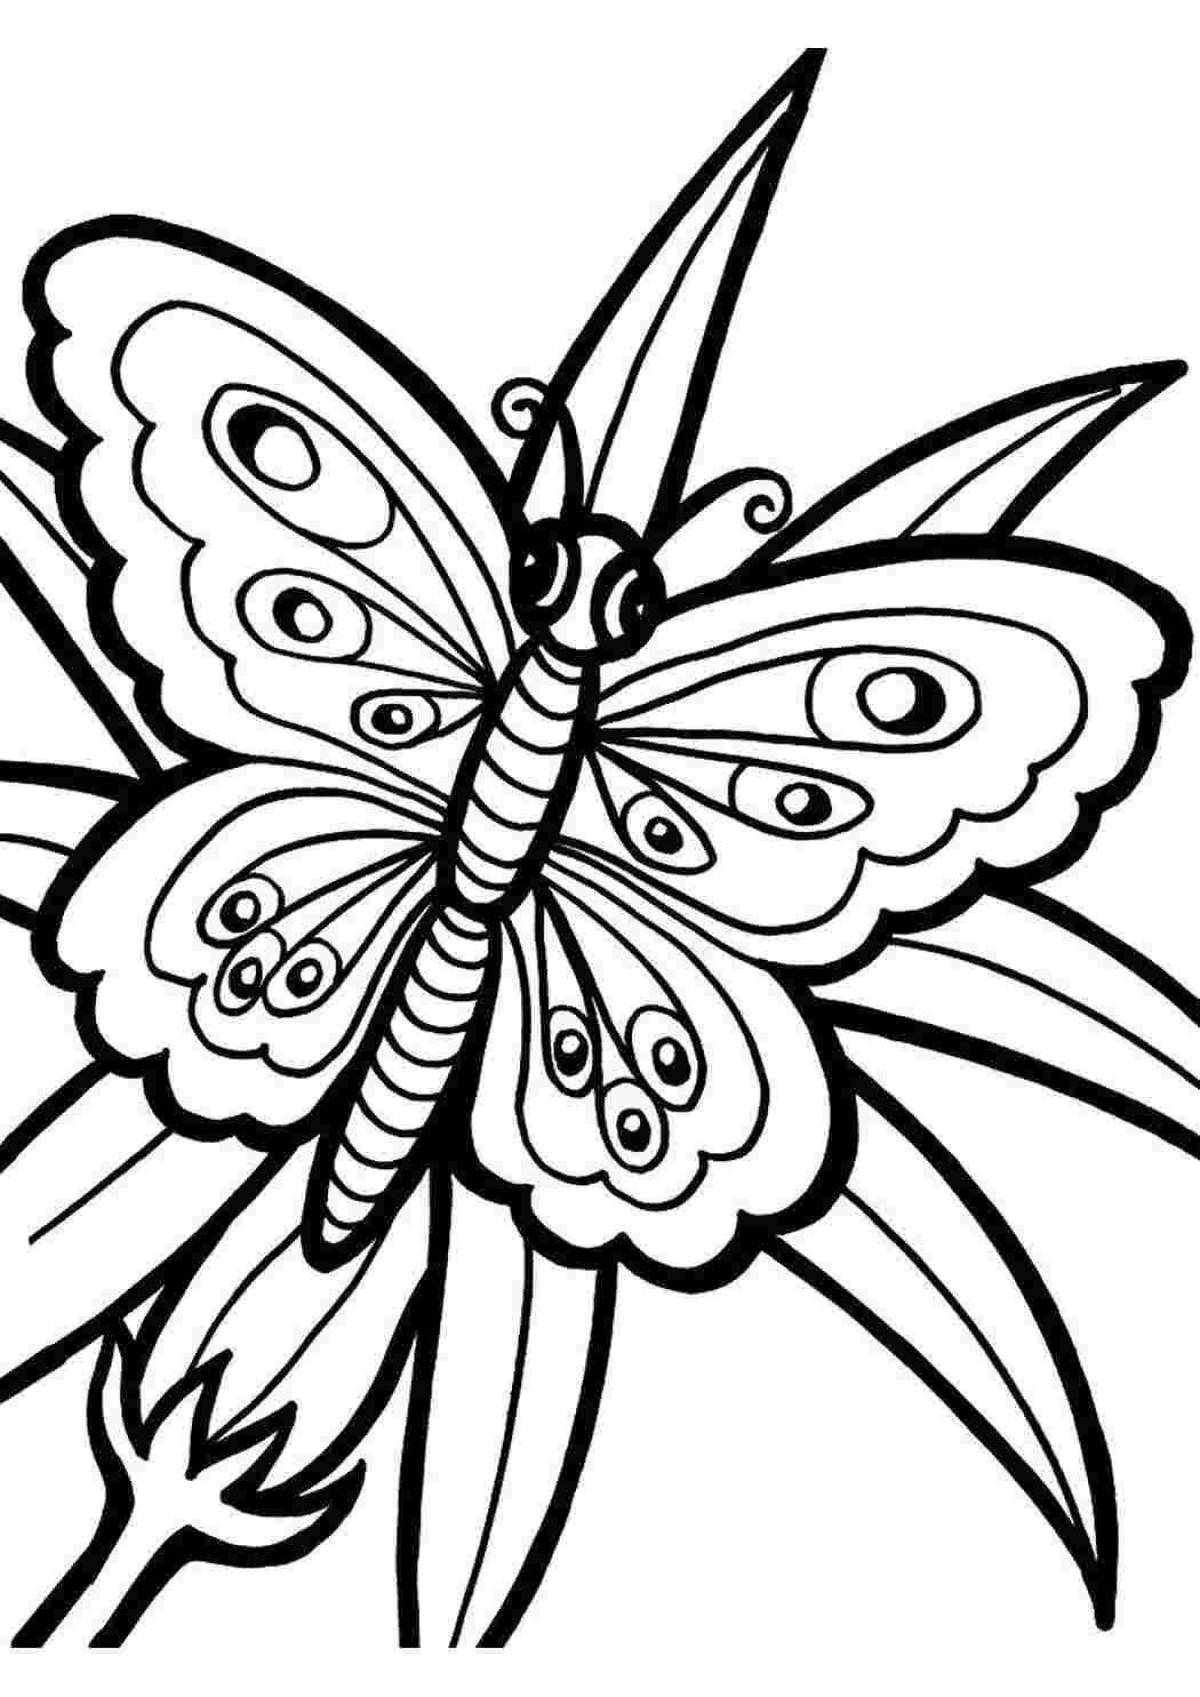 Раскраска 2 бабочки. Раскраска "бабочки". Раскраска для девочек бабочки. Бабочка раскраска для детей. Рисунок бабочки для раскрашивания.